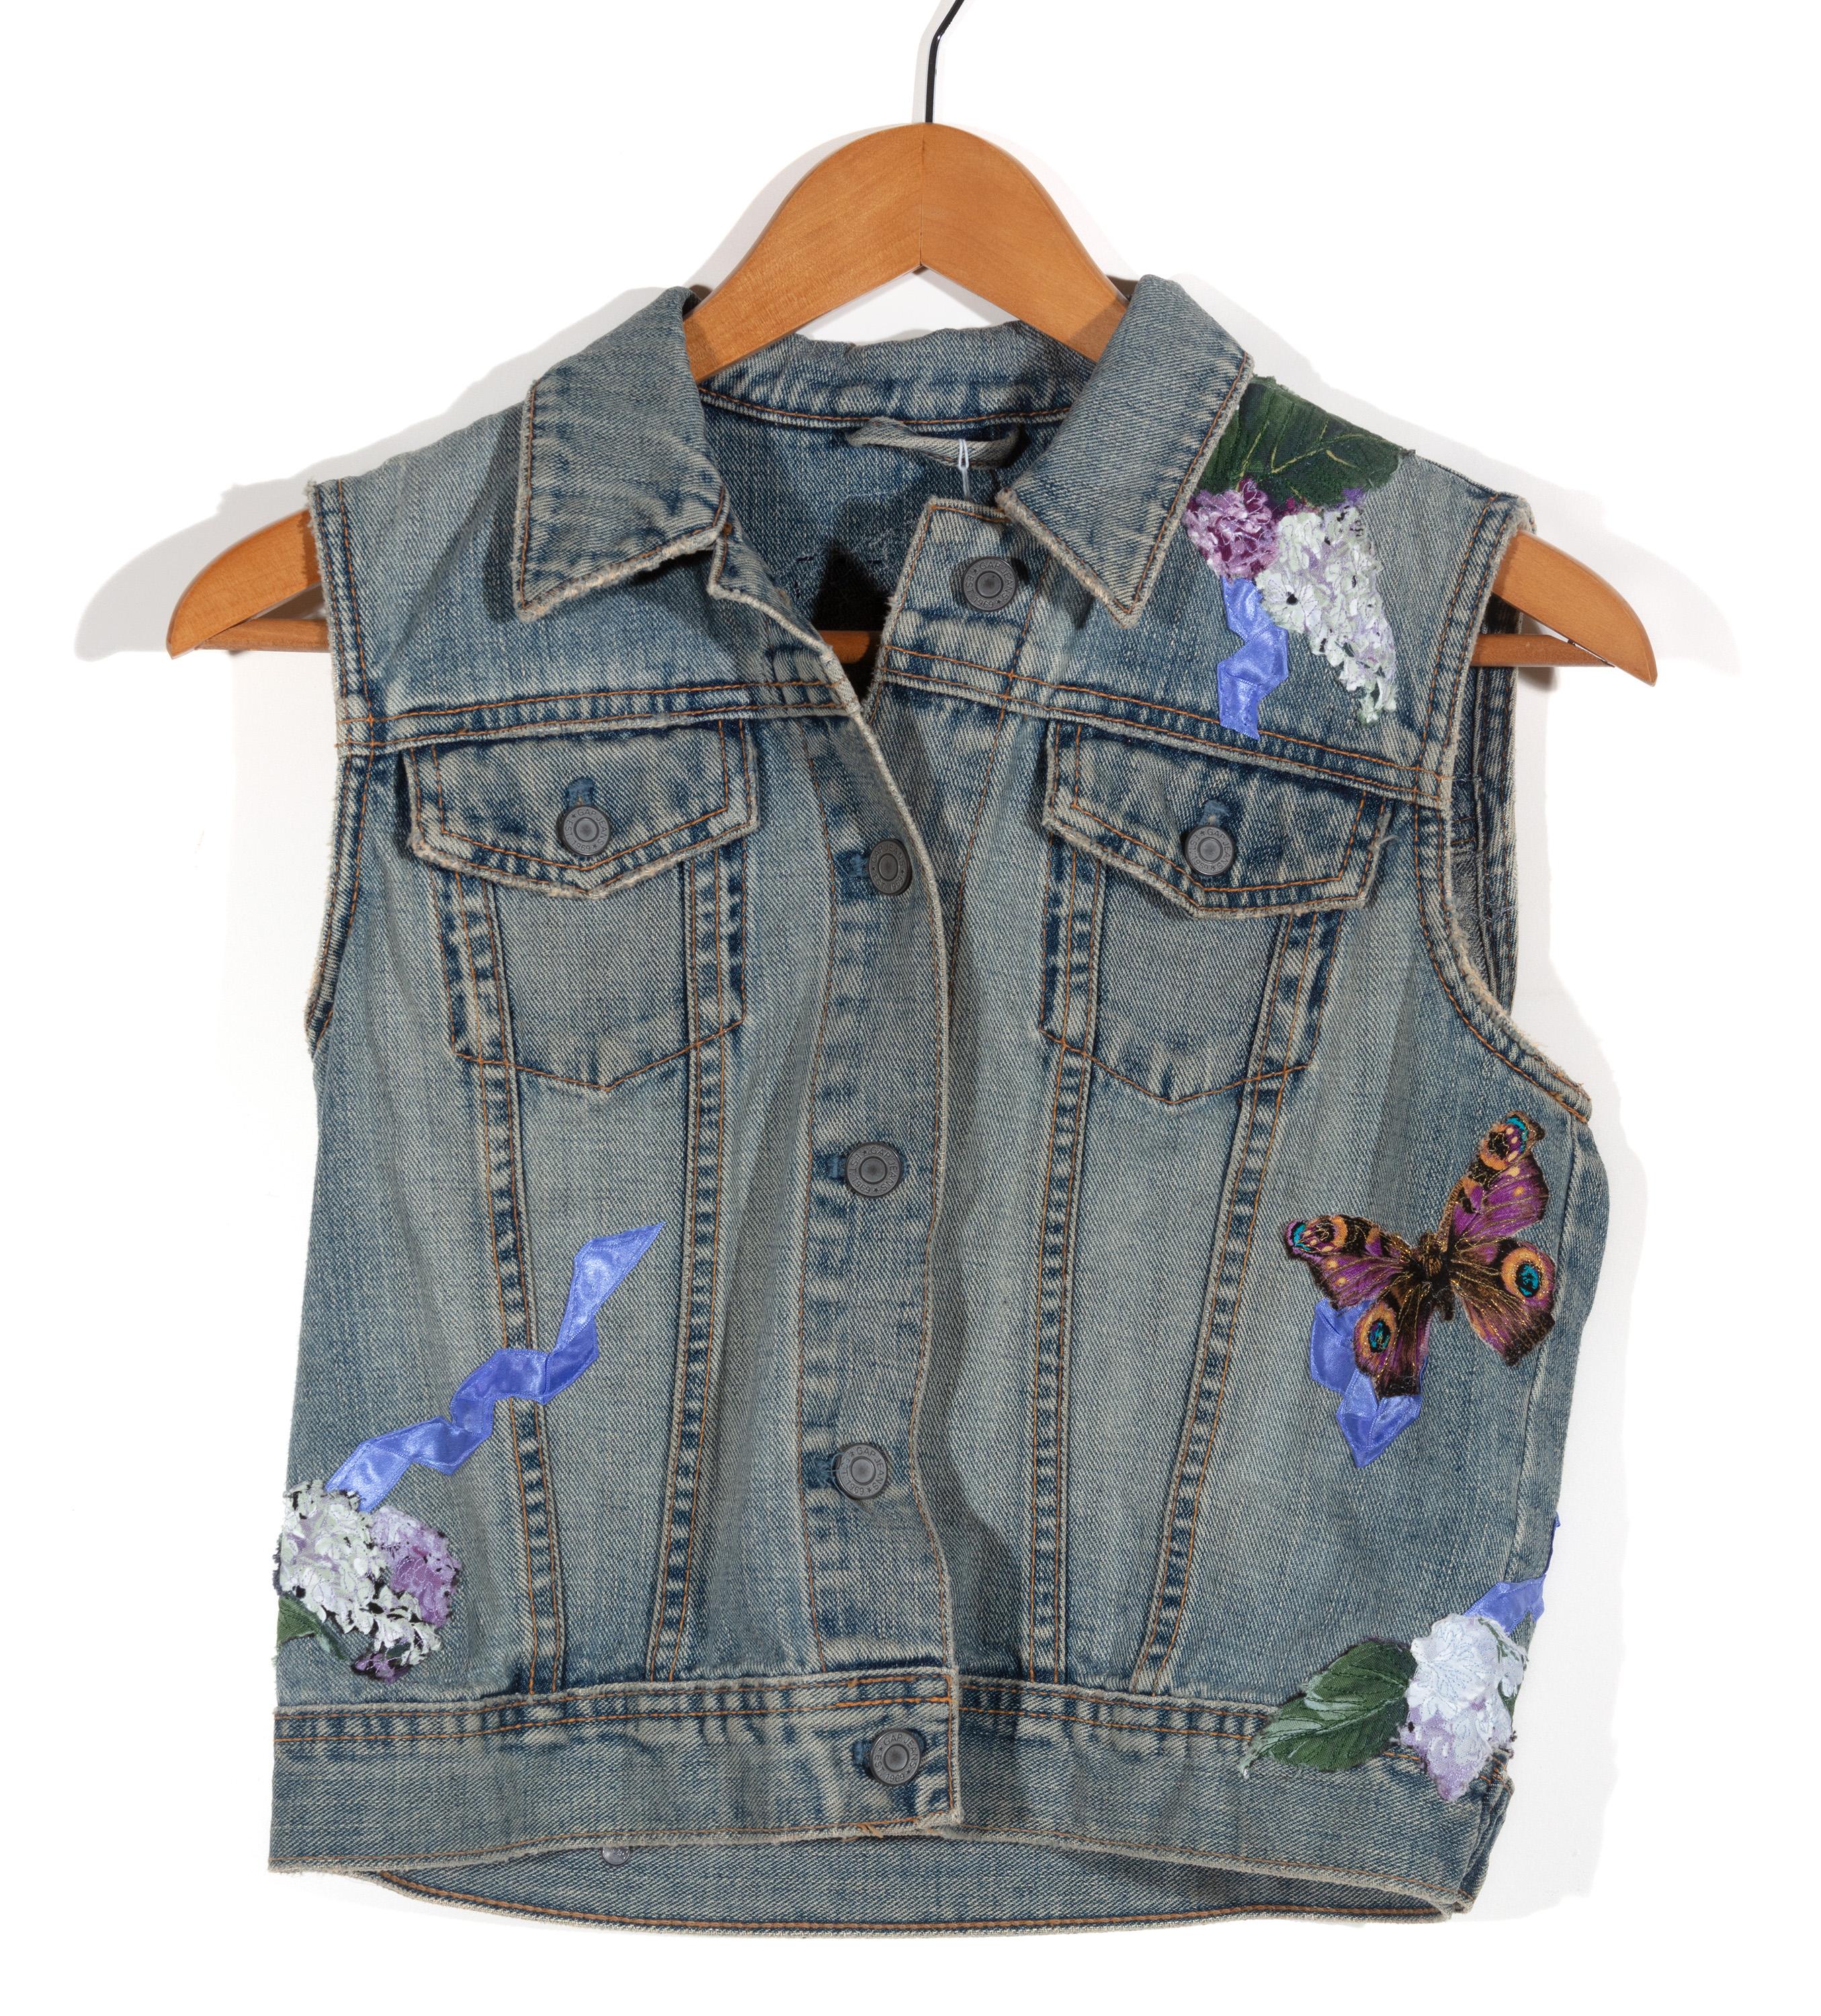 'Child's Sleeveless Blue Jean Jacket' Original Mixed Media Textile - Contemporary Mixed Media Art by Stacy Wiatrak